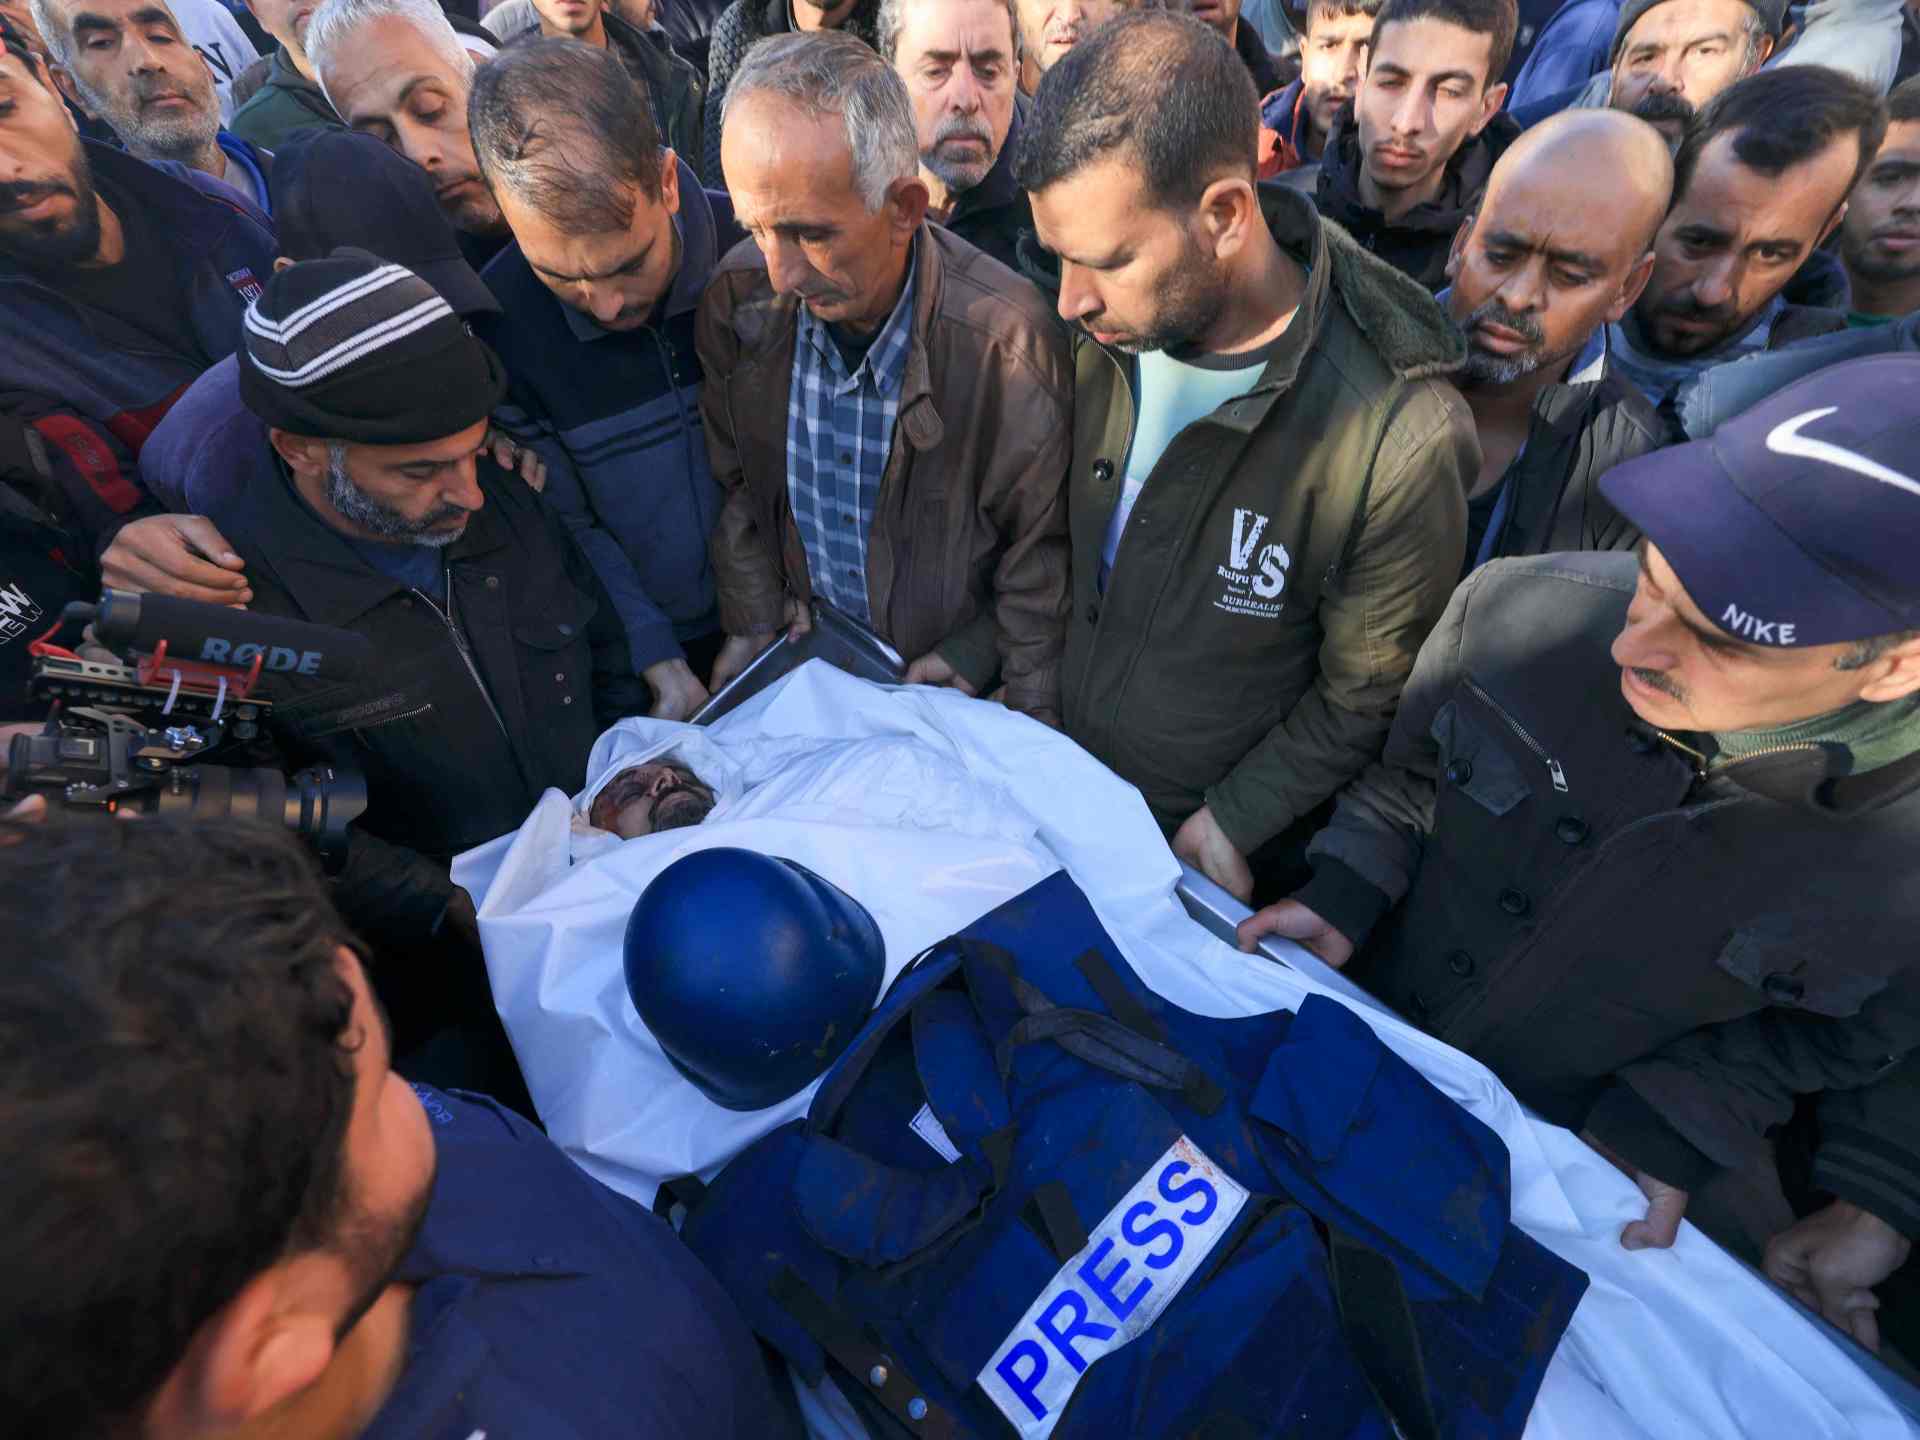 ارتفاع عدد الشهداء الصحفيين بغزة إلى 97 منذ بدء العدوان الإسرائيلي | أخبار – البوكس نيوز